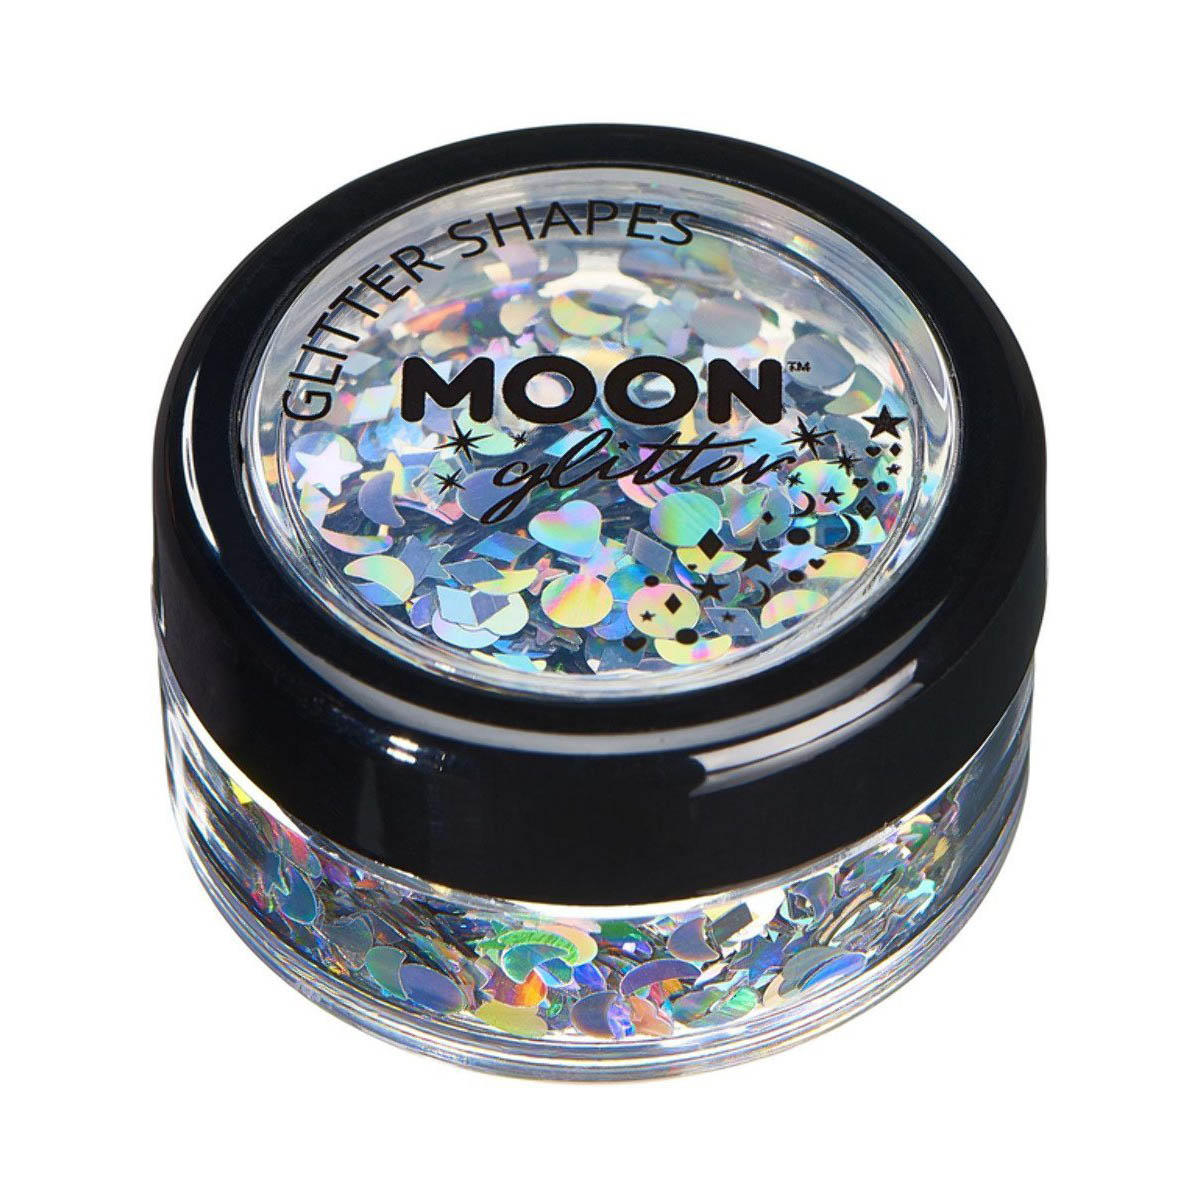 Moon glitter i burk, holografiska former 3g Silver